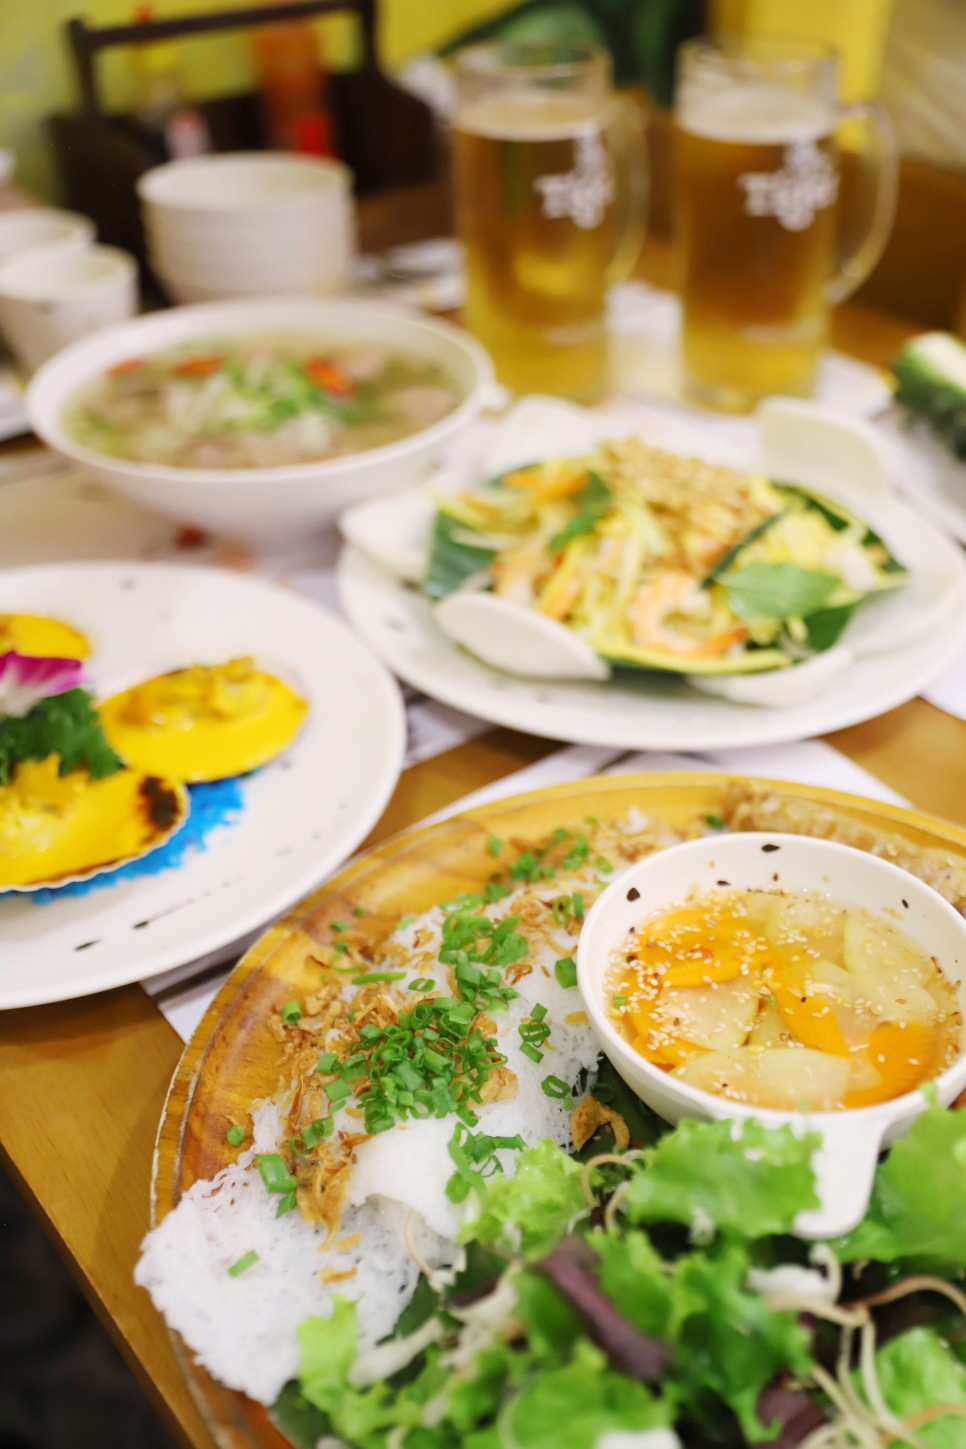 베트남 다낭 로컬 맛집 리스트 2 : 냐벱 한시장 + 코바 쌀국수 메뉴와 할인방법